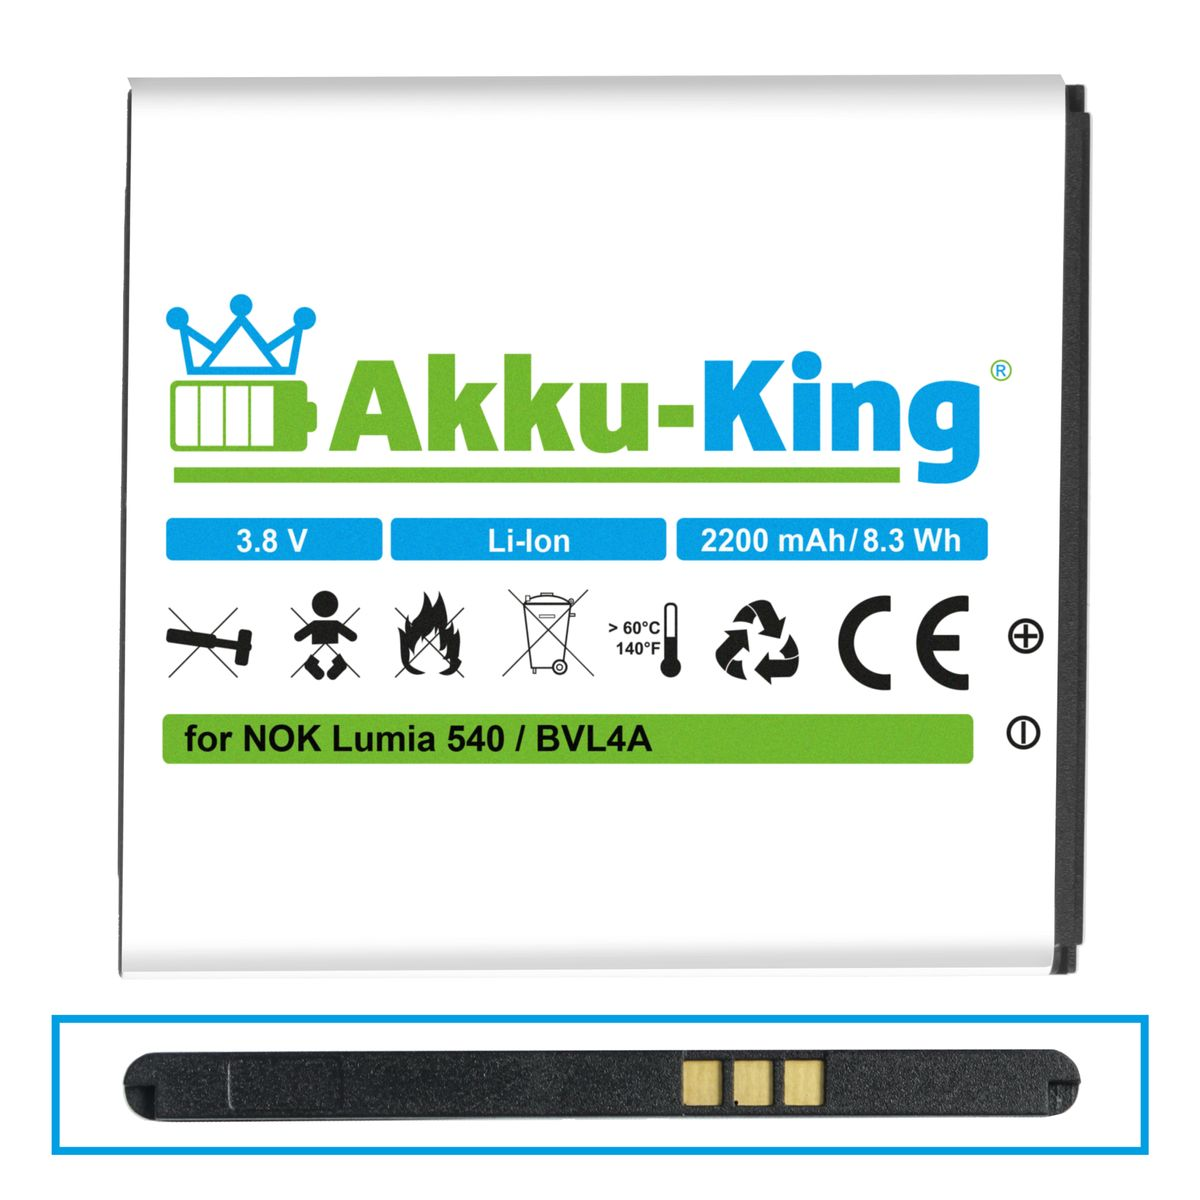 mit Volt, BV-L4A AKKU-KING kompatibel Nokia Li-Ion 3.8 Akku Handy-Akku, 2200mAh